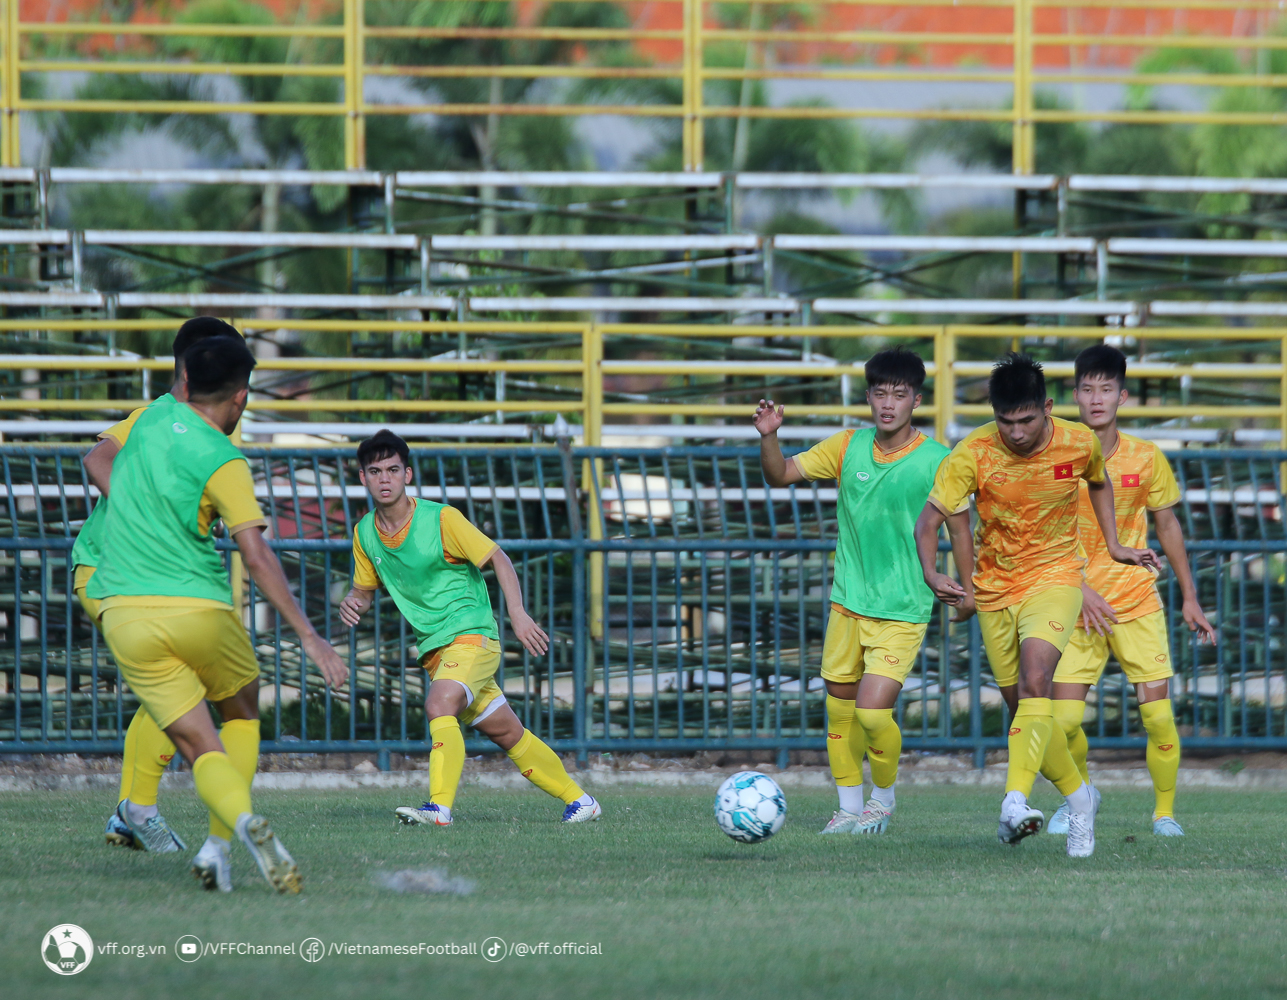 Sau đó, toàn đội bước vào tập chiến thuật. Ban huấn luyện đưa ra những bài tập cụ thể nhằm giúp các cầu thủ có sự chuẩn bị tốt nhất cho trận gặp U23 Lào.